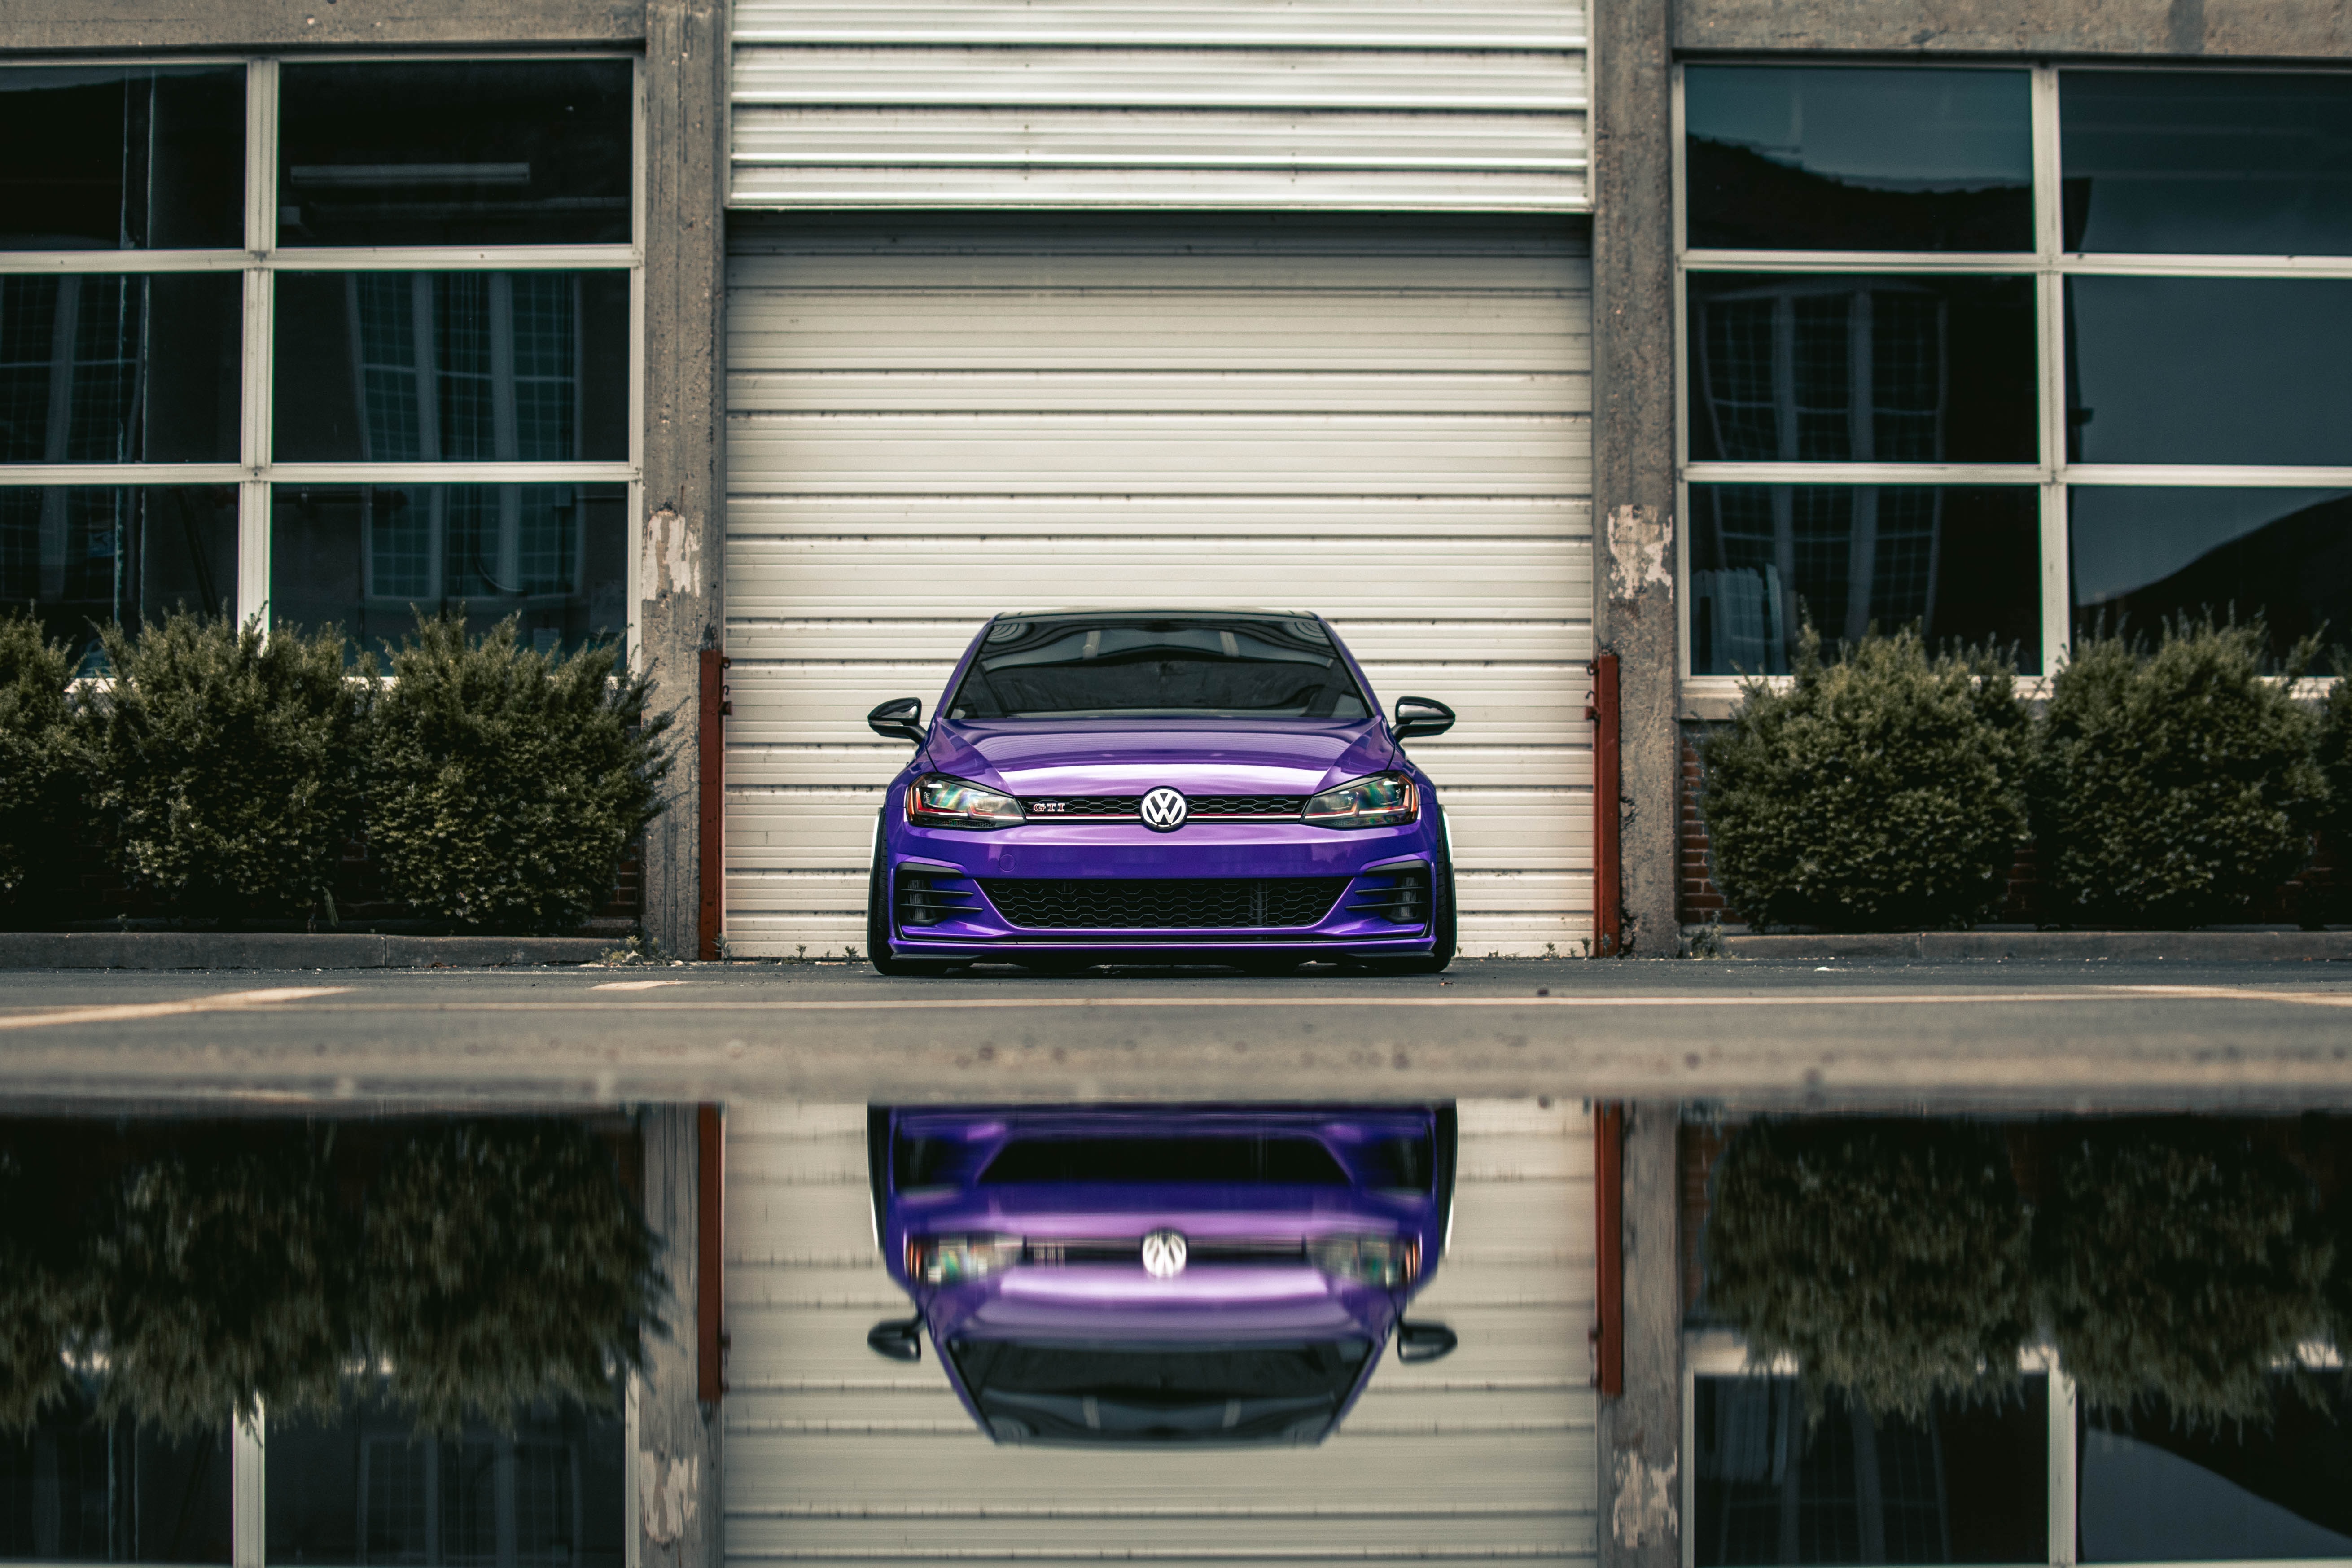 volkswagen, front view, violet, cars, lights, car, machine, purple, headlights, volkswagen gti lock screen backgrounds